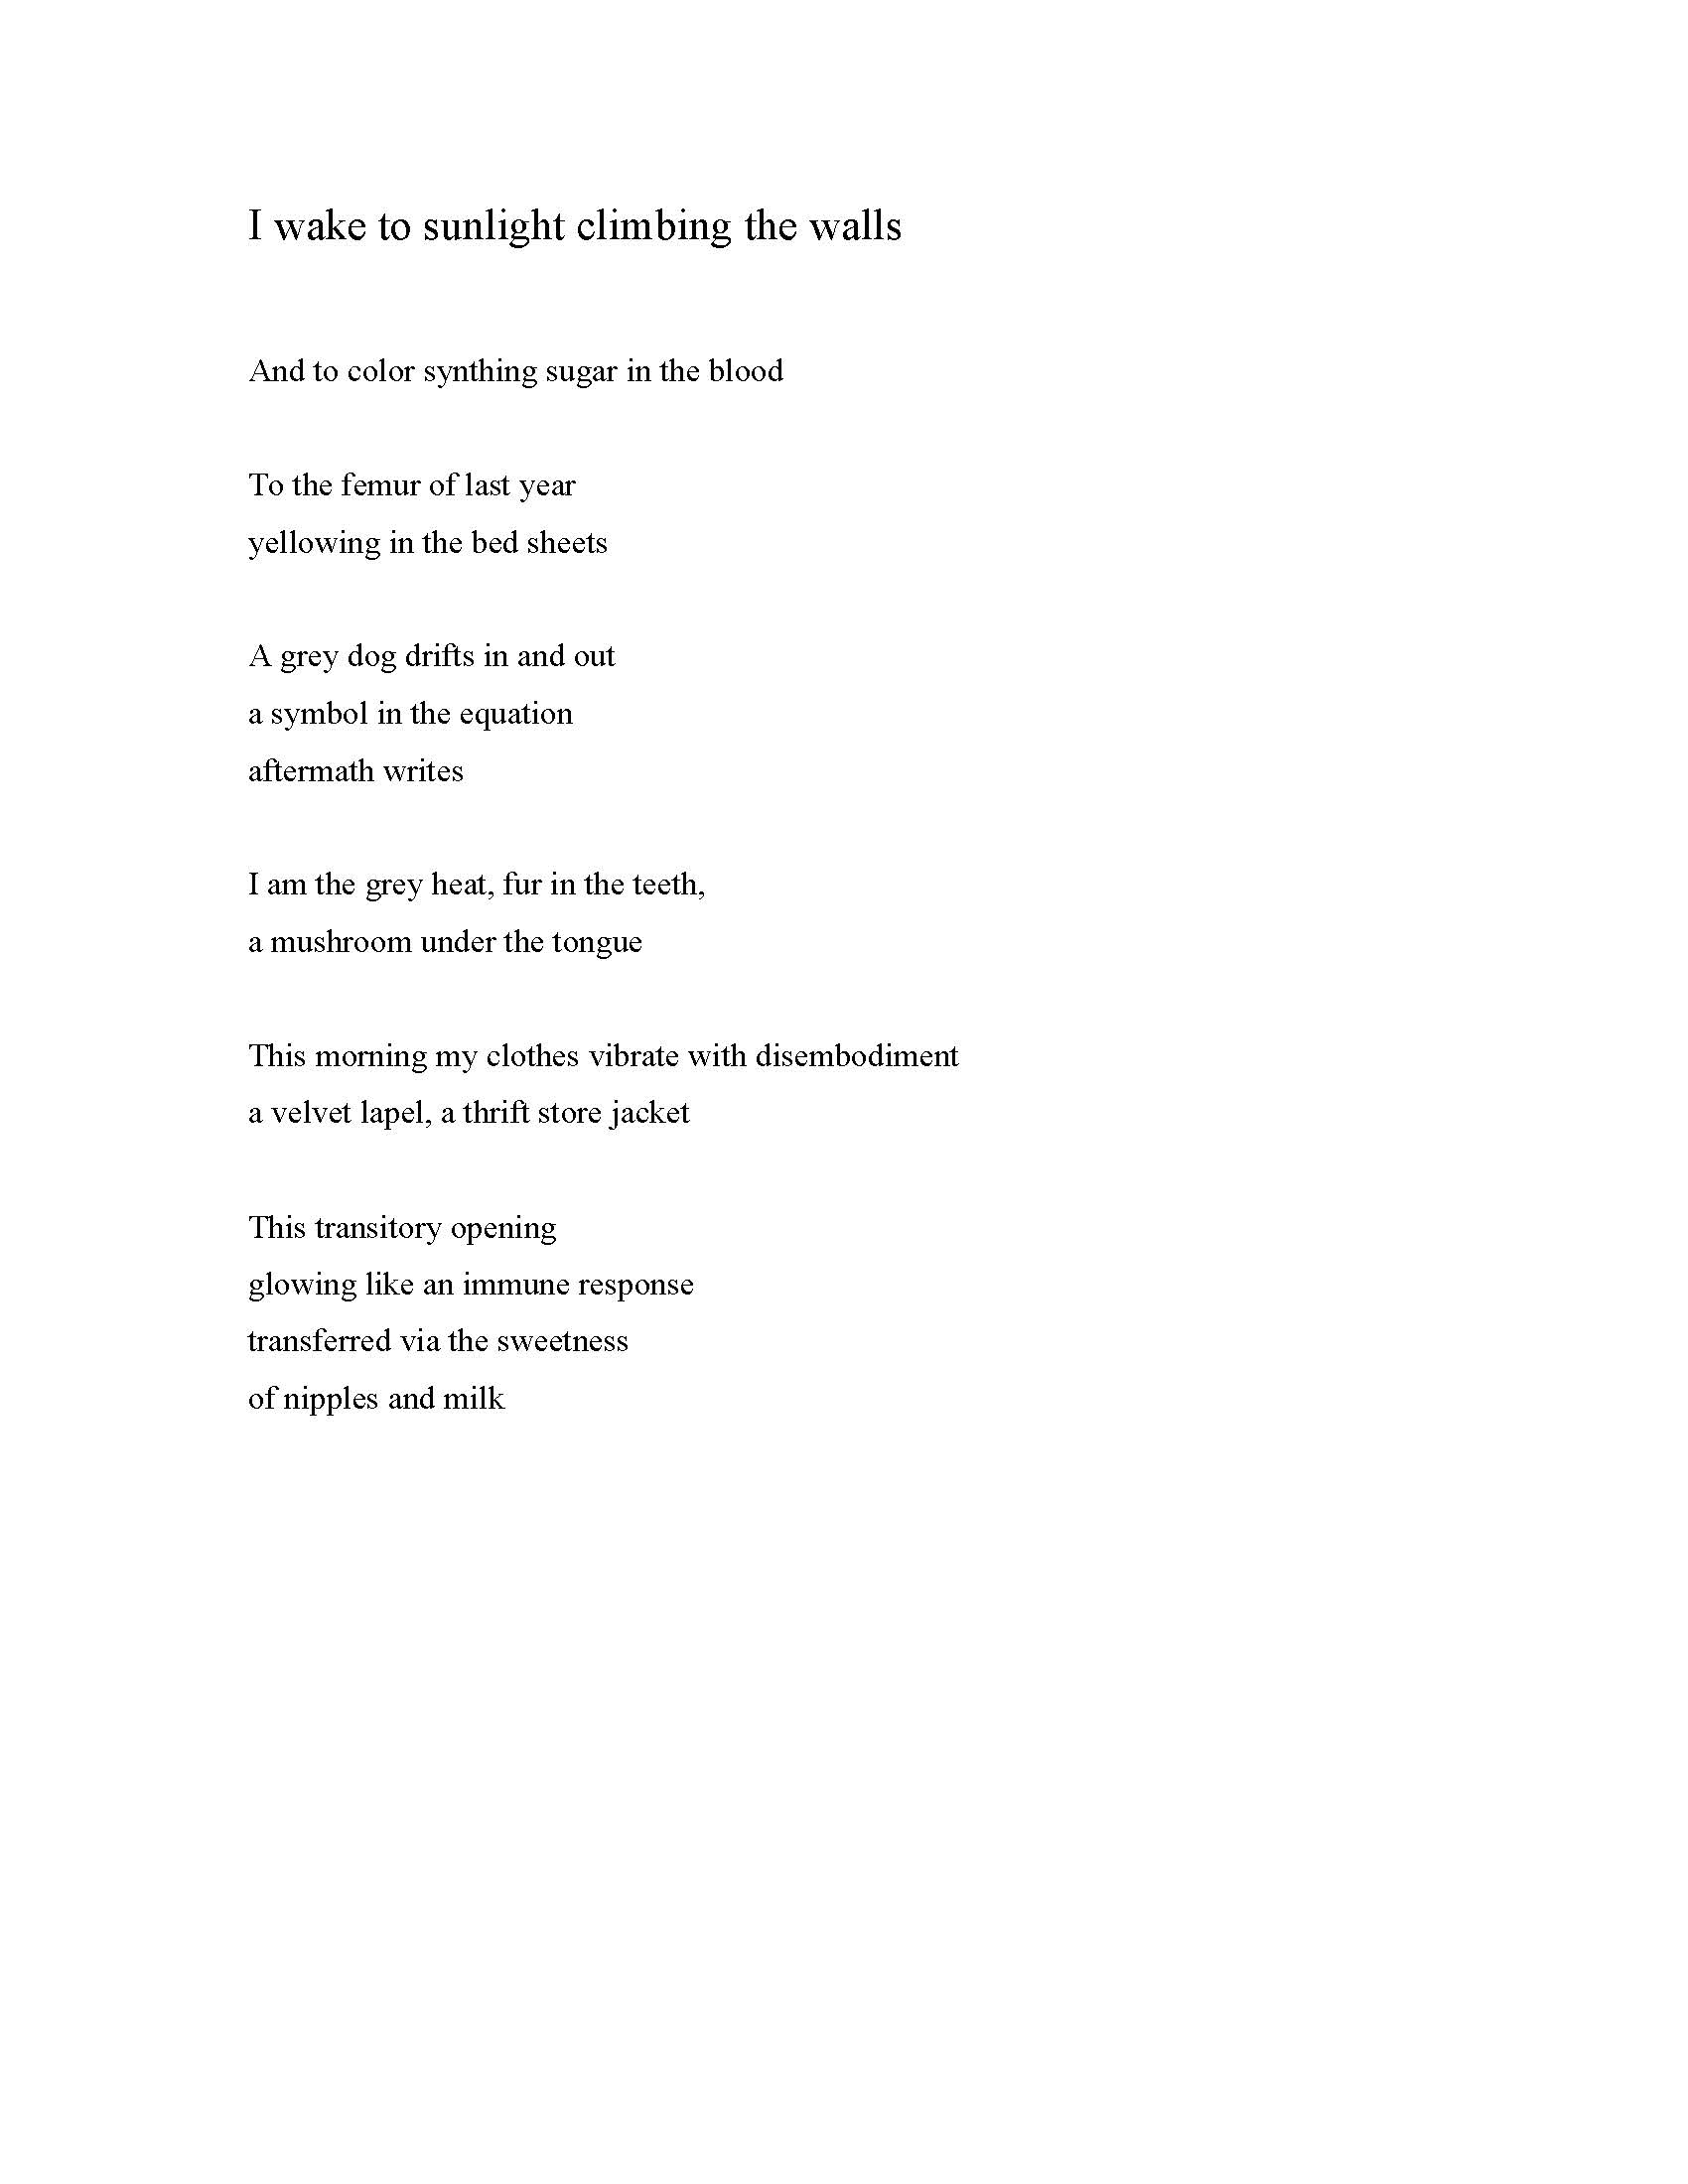 formatted poem